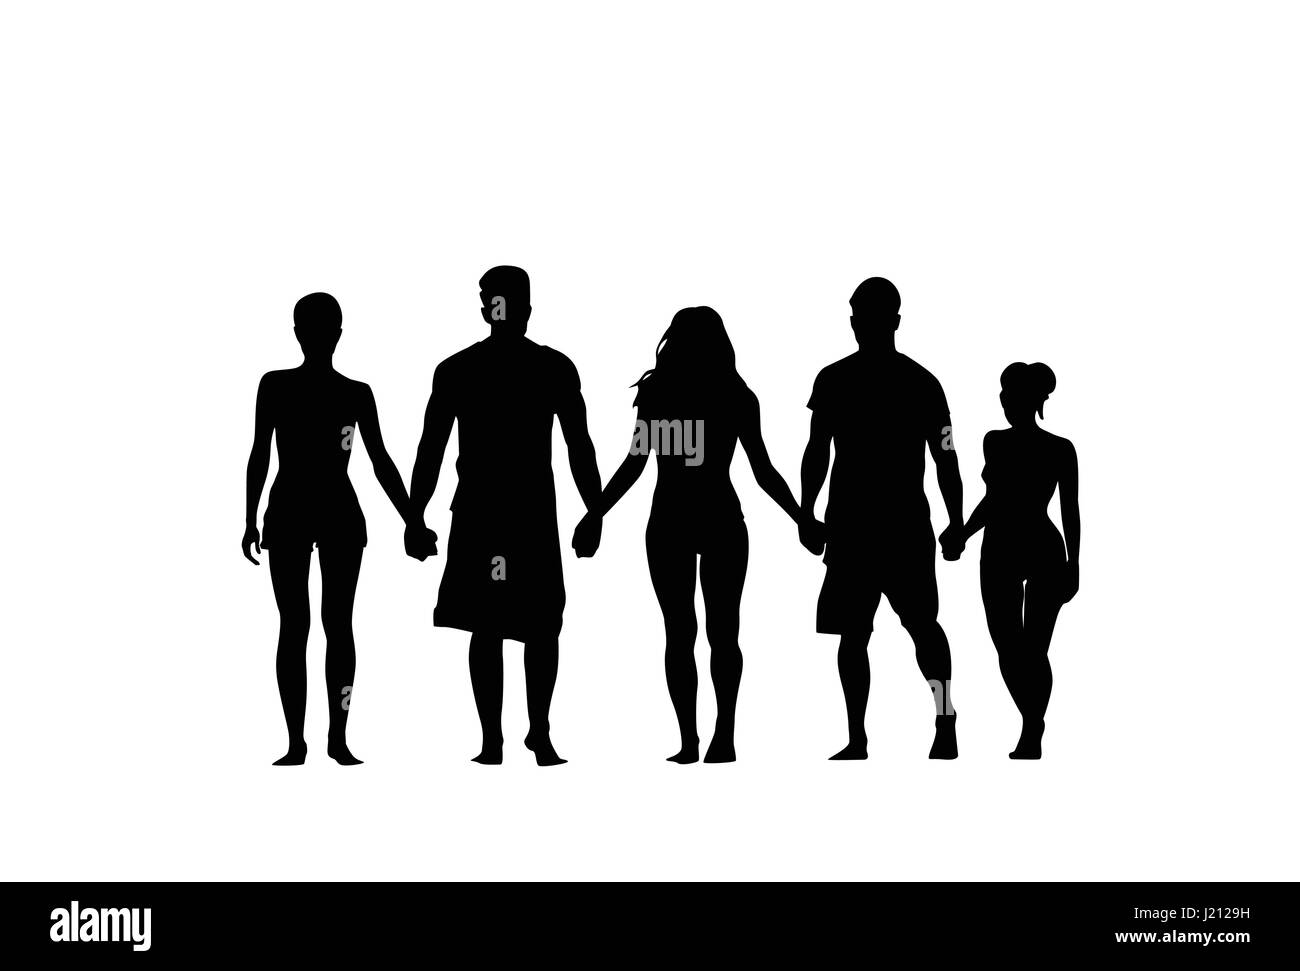 Silhouette Stand du groupe de personnes se tenant par la main l'homme et la femme pleine longueur sur fond blanc Illustration de Vecteur